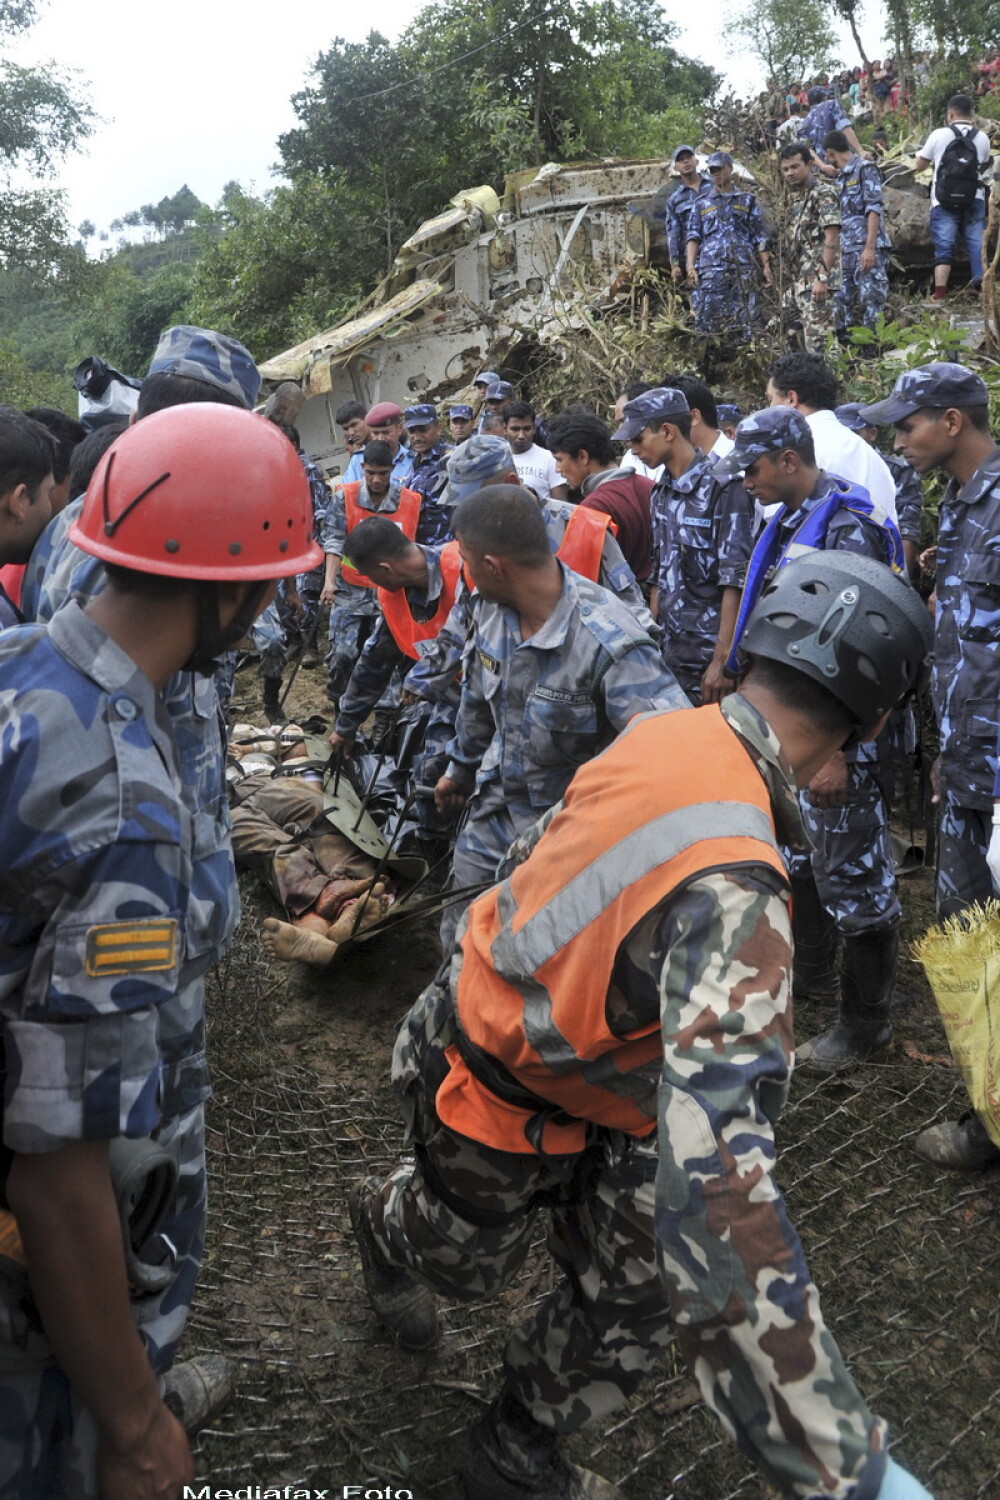 19 morti, majoritatea turisti straini, intr-un accident aviatic in Nepal. GALERIE FOTO - Imaginea 2